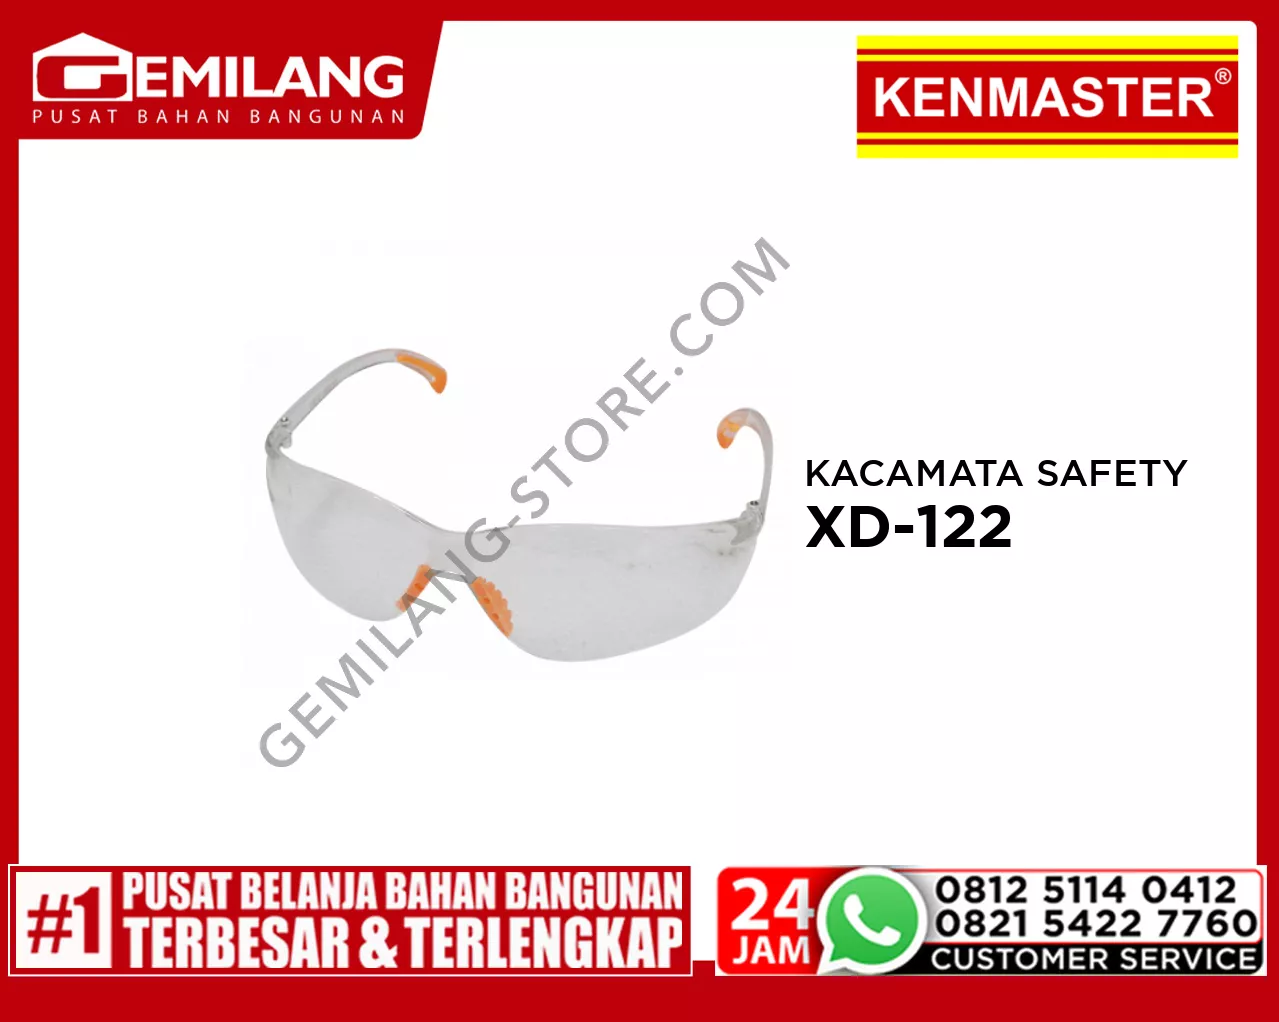 KENMASTER KACAMATA SAFETY XANDER XD-122